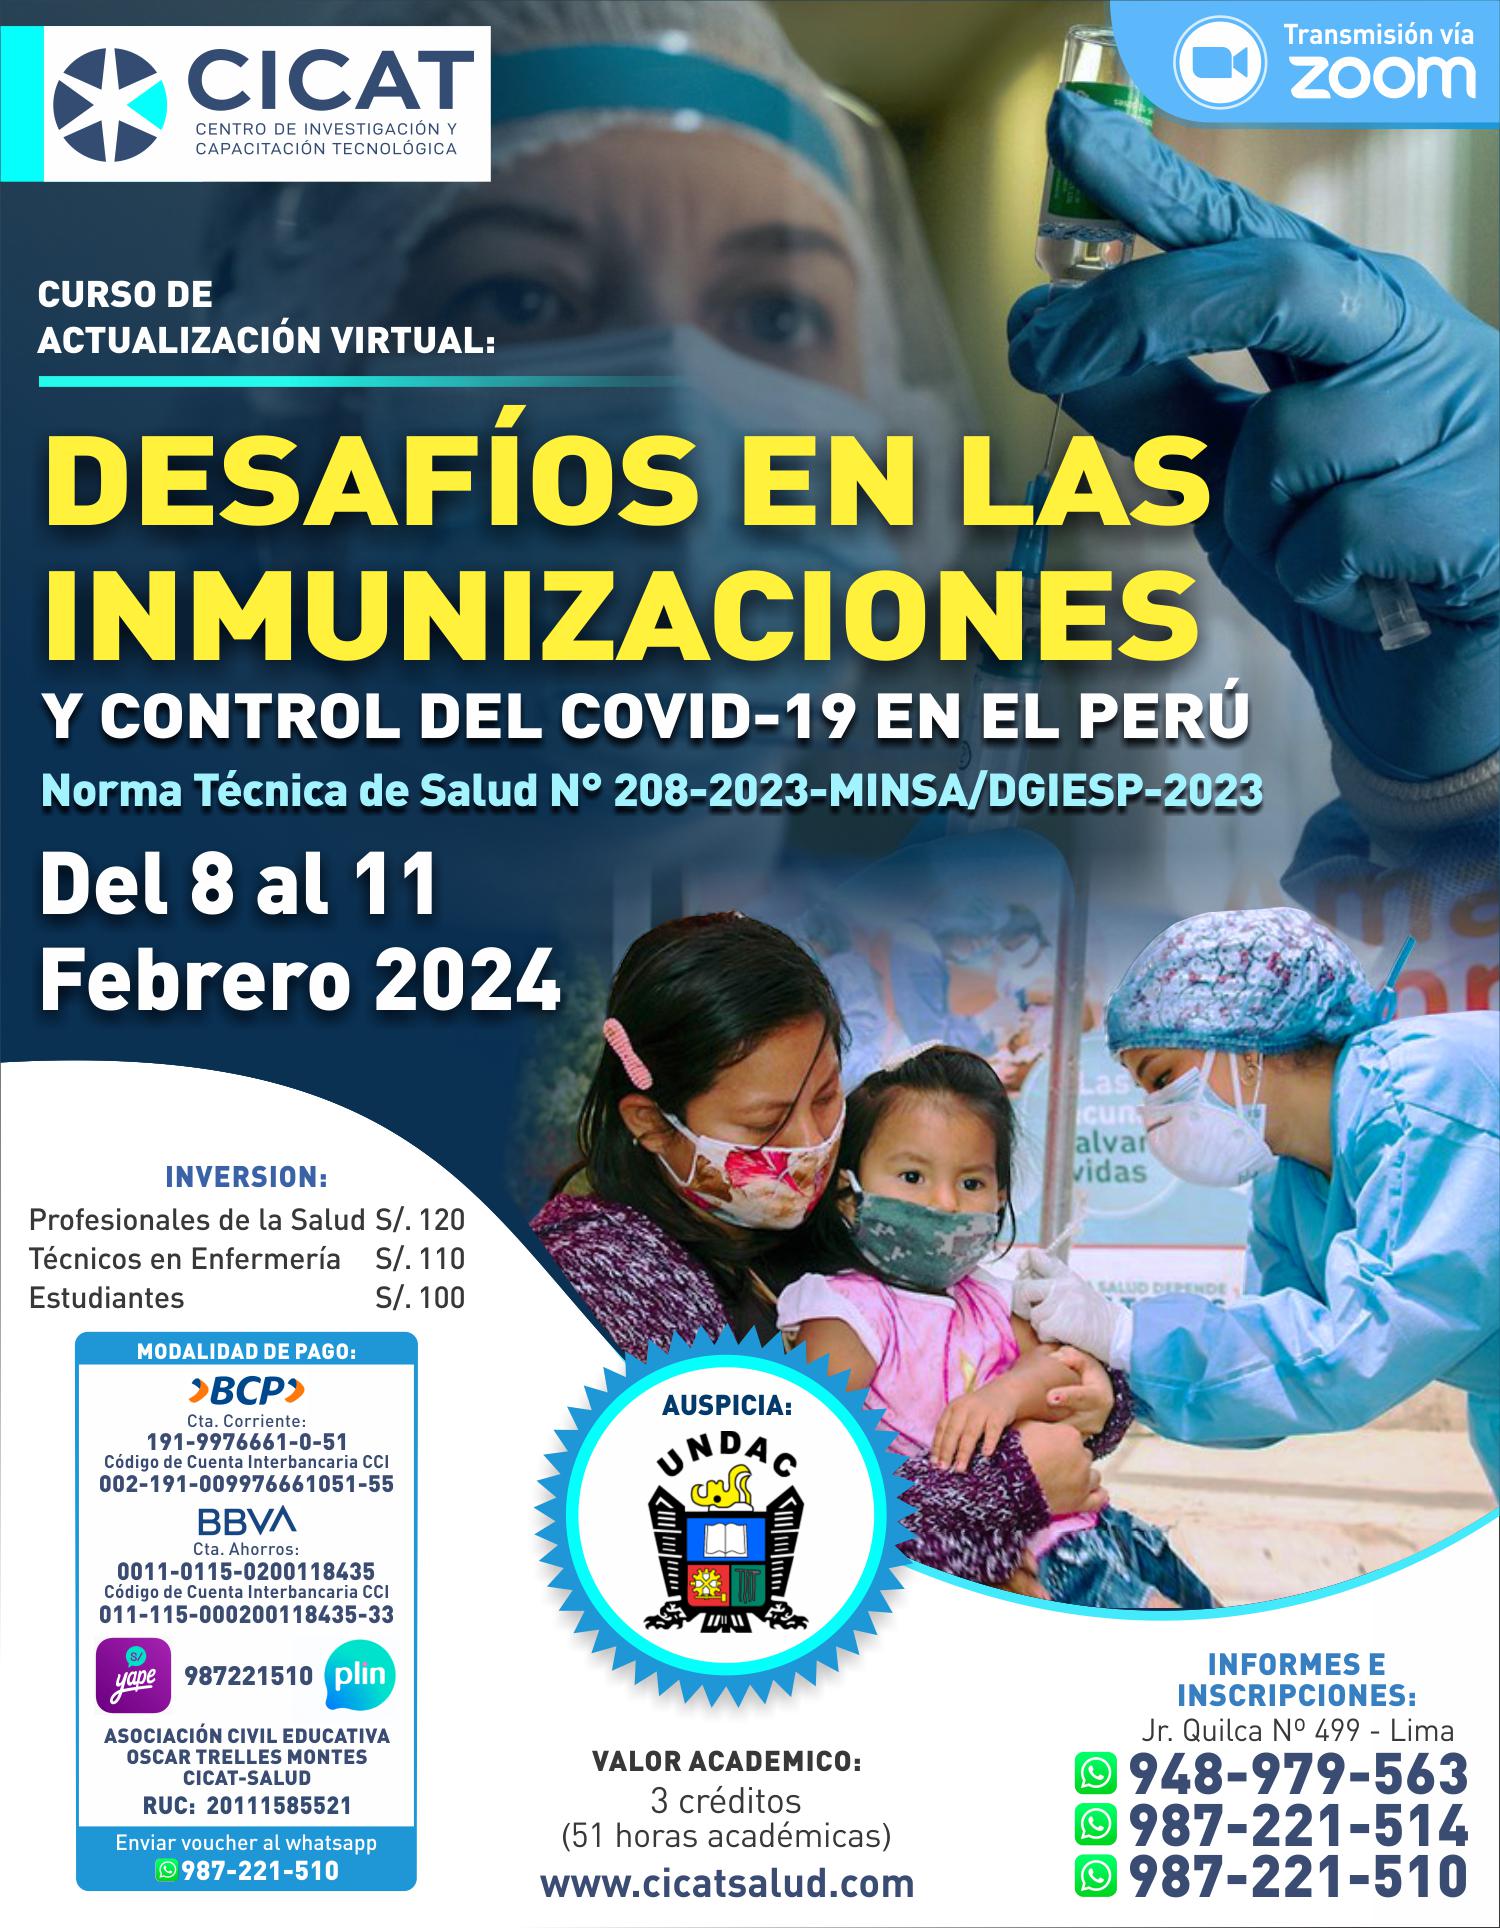 Desafíos de las Inmunizaciones y Control del Covid-19 en el Perú